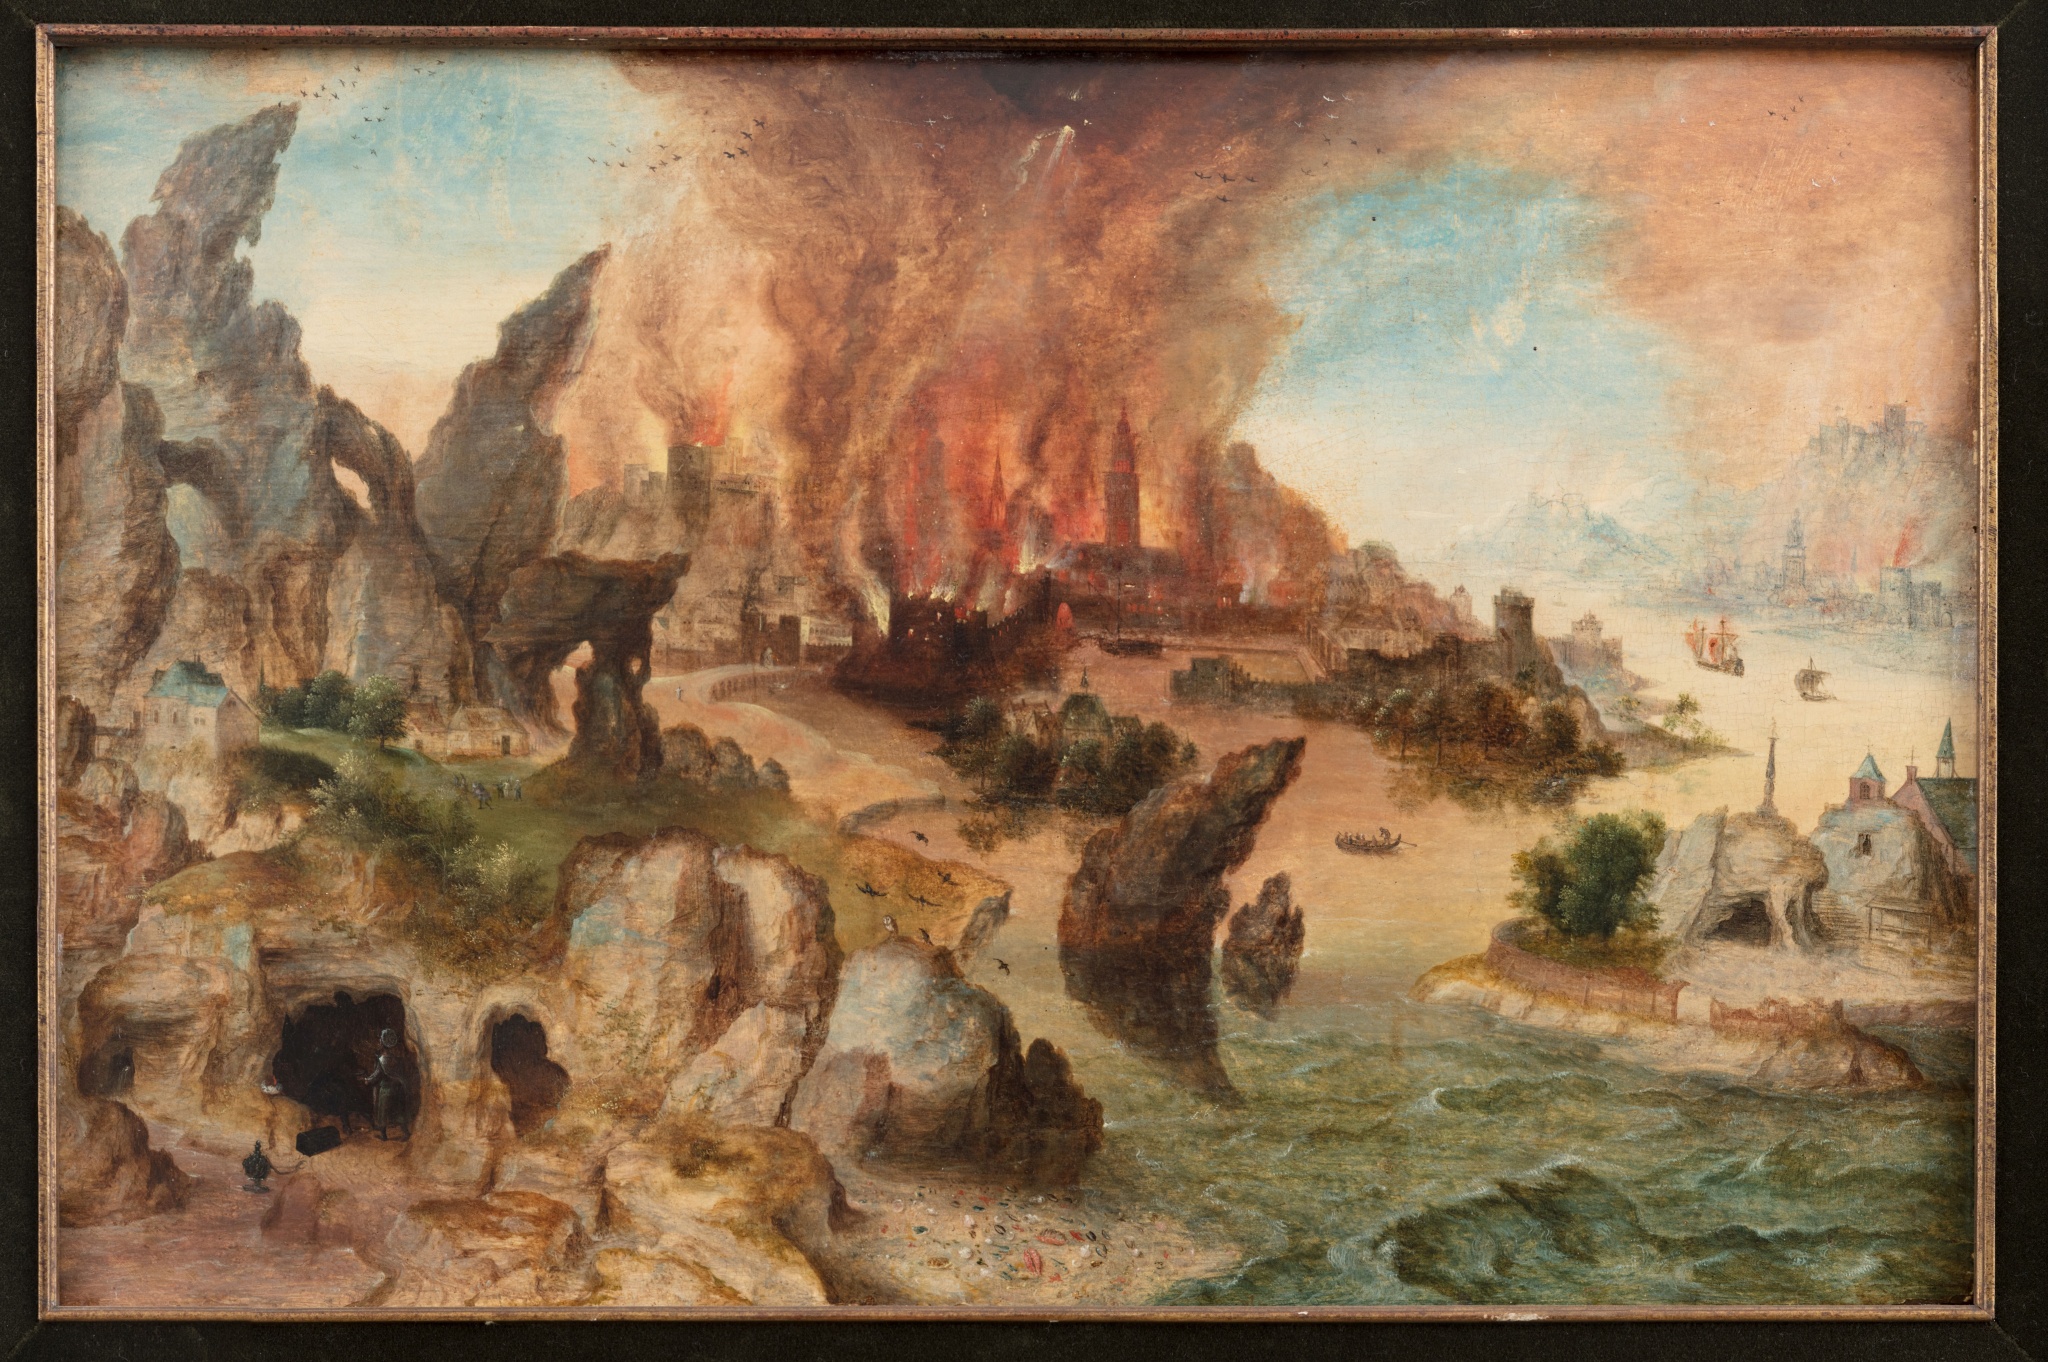 Paysage de montagne avec l'histoire de Loth et ses filles et la destruction de Sodome et Gomorrhe